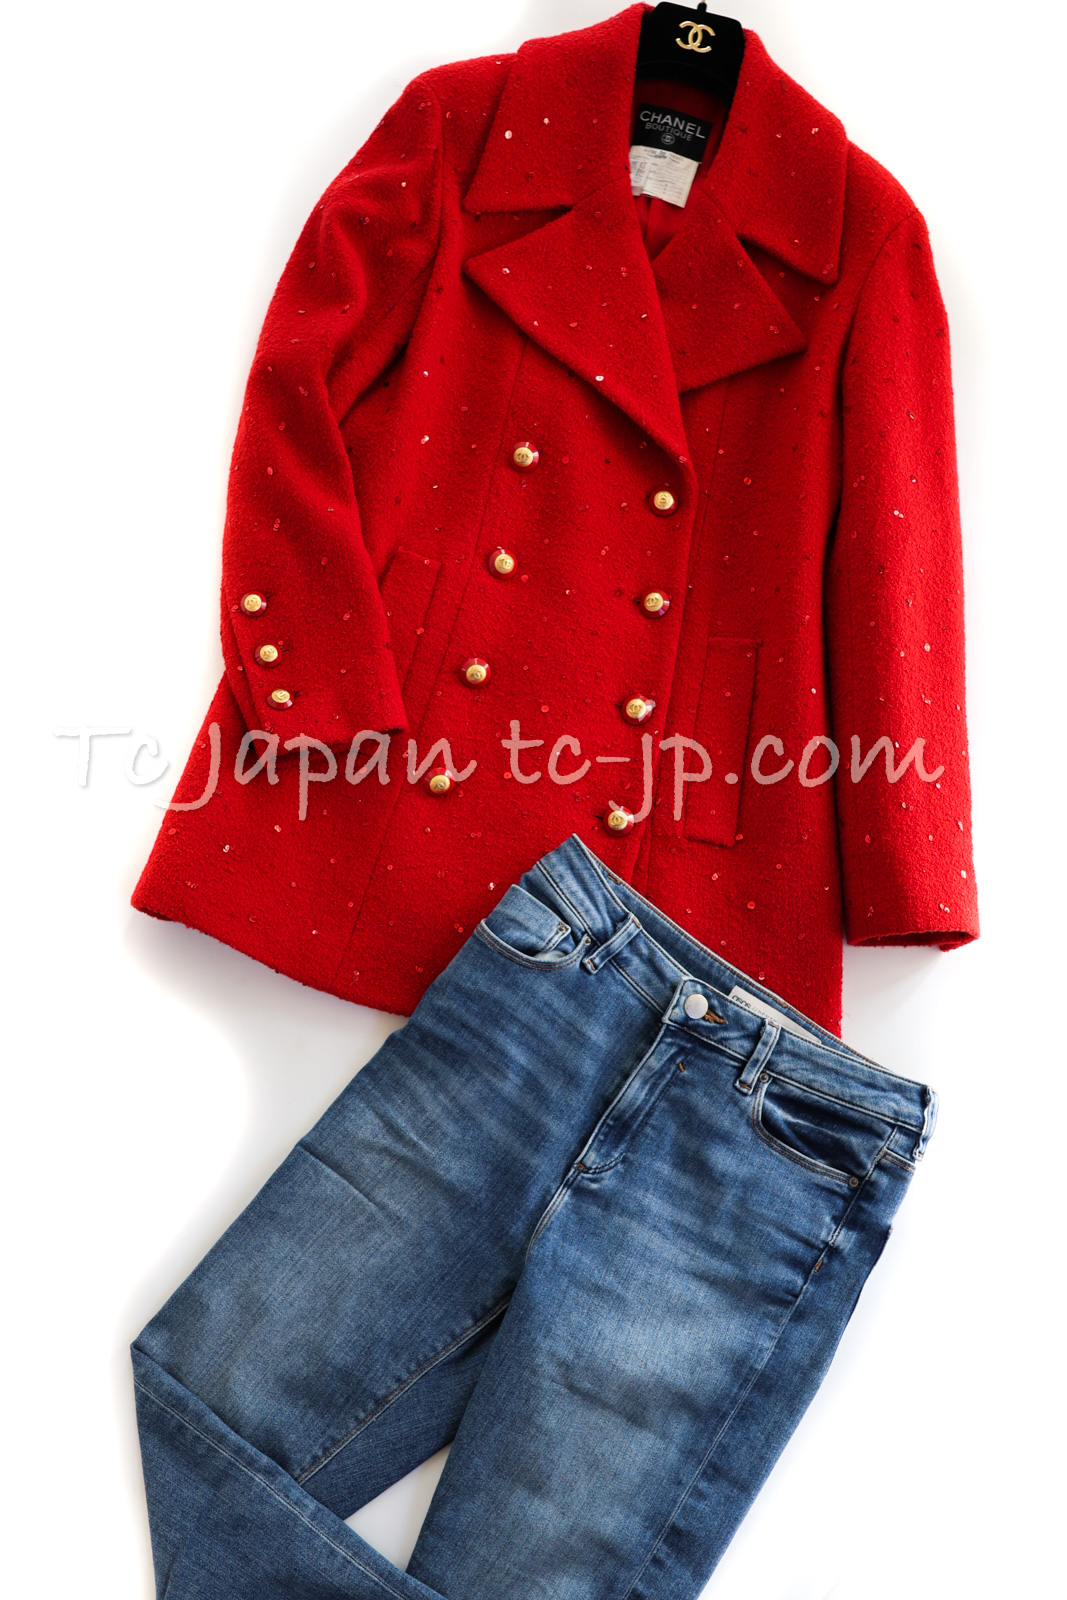  Chanel жакет CHANEL ценный ... Vintage красный красный украшен блестками Kirari осень-зима шерстяное пальто здесь кнопка 38 40 42